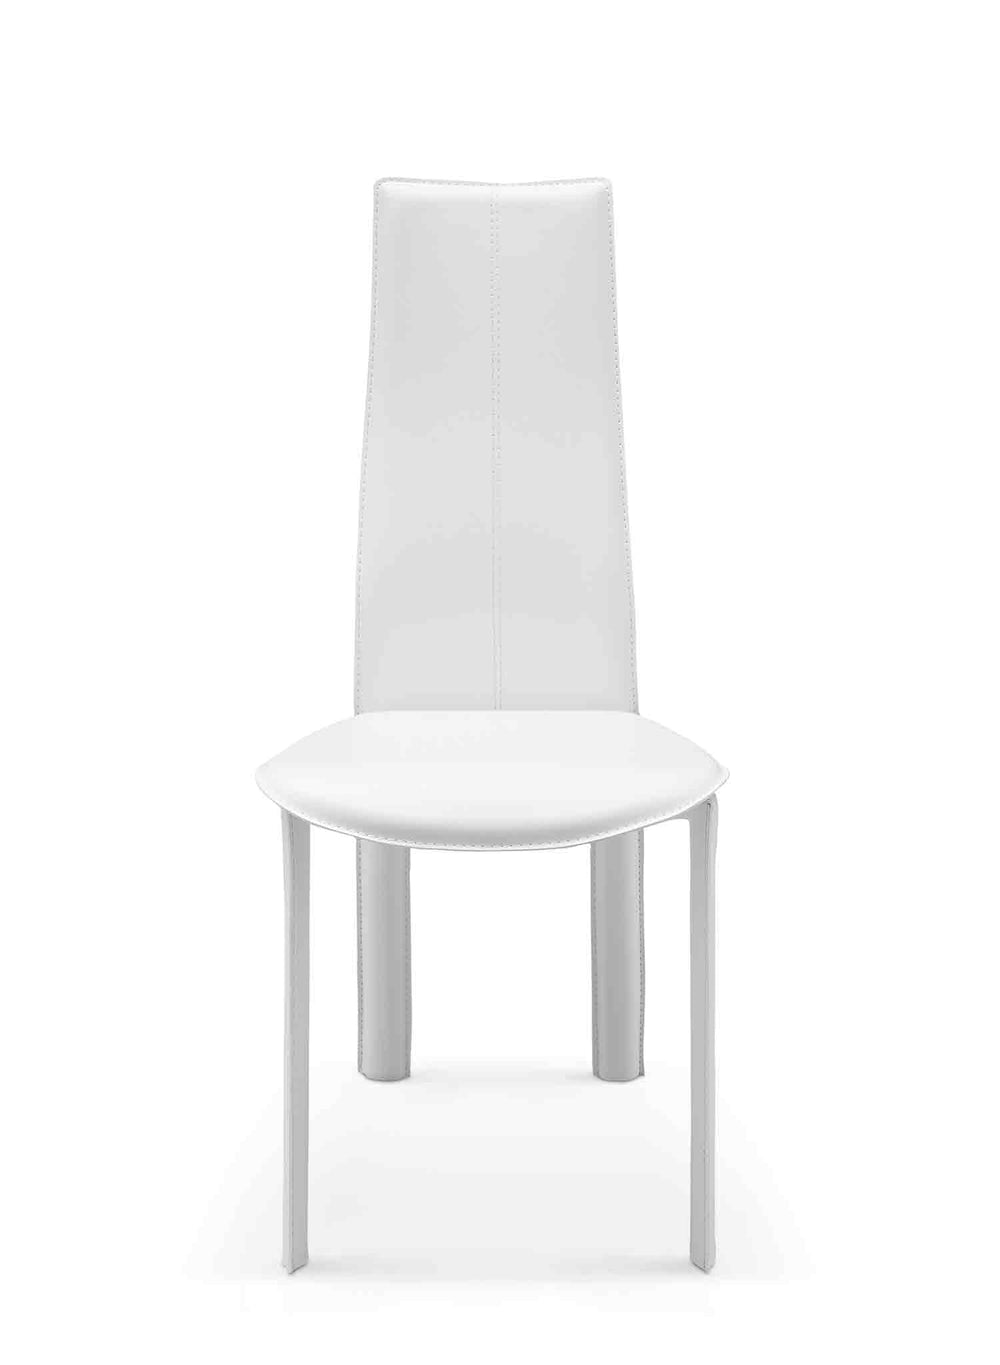 Allison Dining Chair-Whiteline Modern Living-WHITELINE-DC1004H-WHT-Dining ChairsWhite-2-France and Son